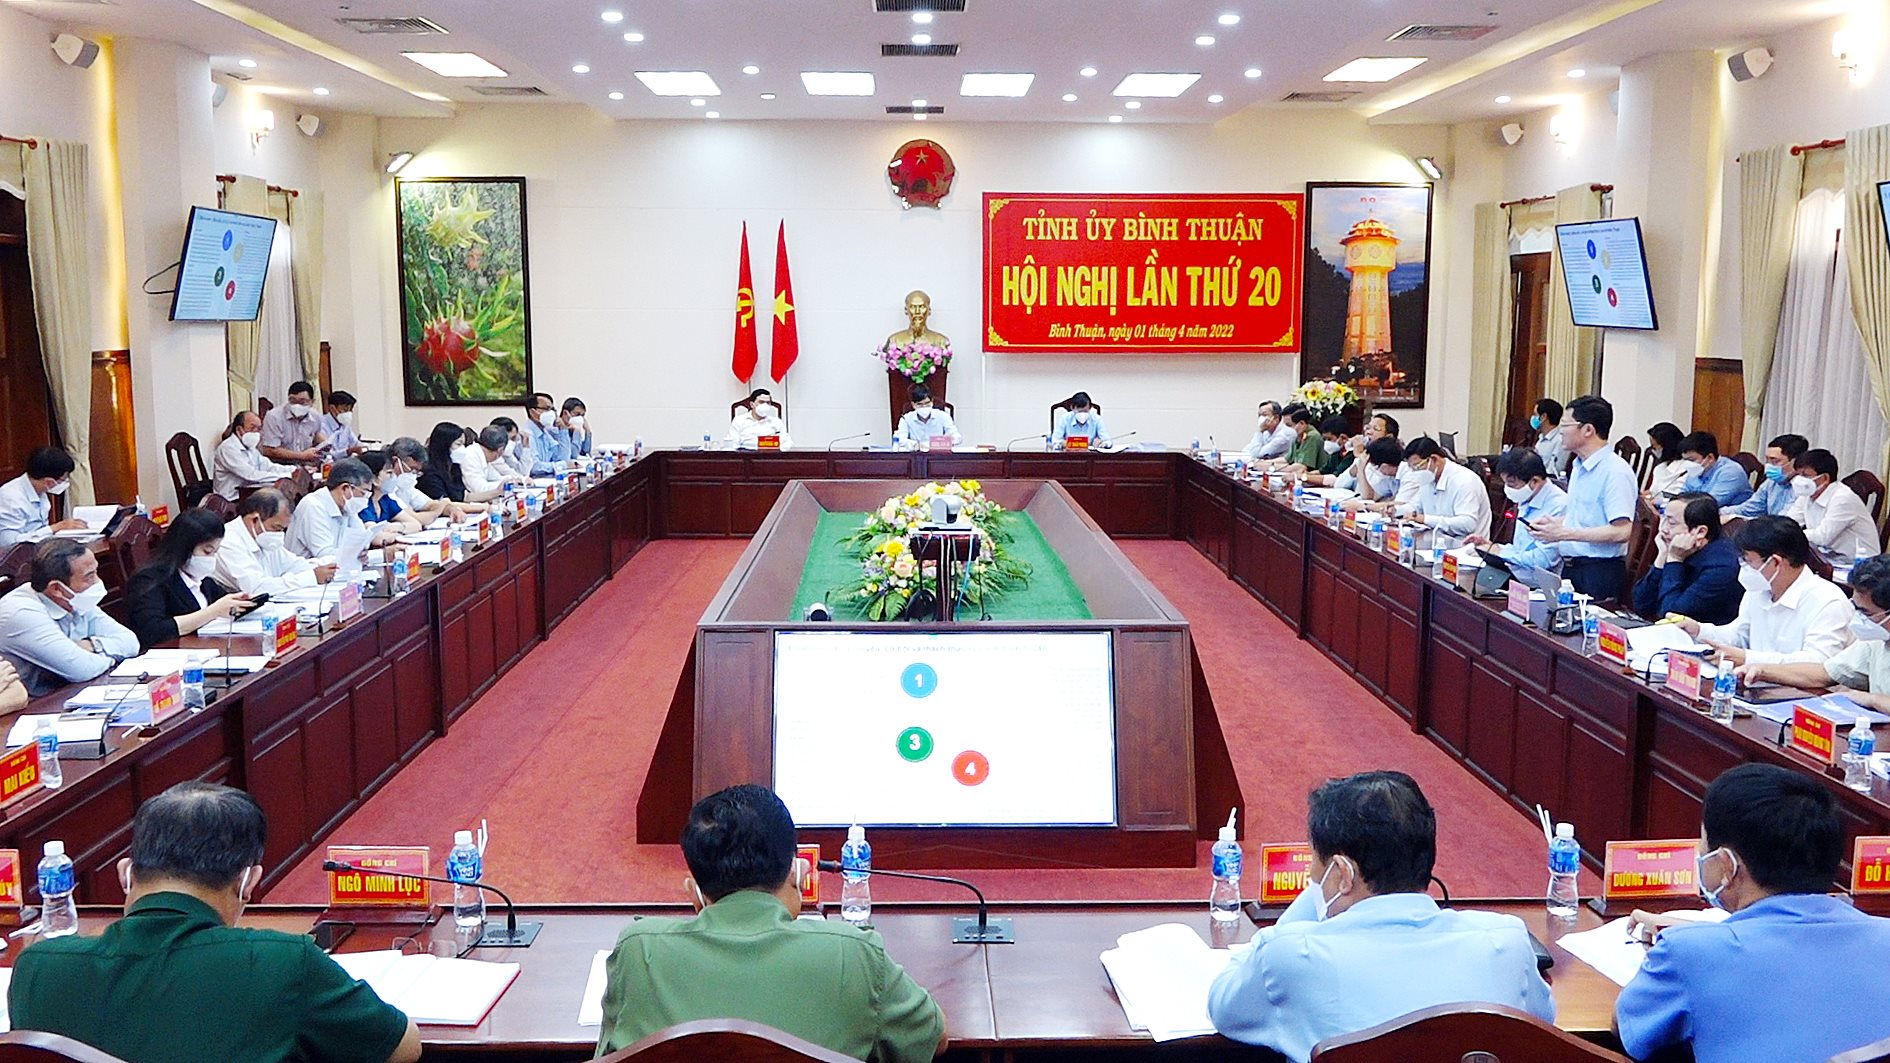 Bình Thuận: Ứng dụng công nghệ cao với những chuỗi sản xuất nông - công nghiệp chế biến - Ảnh 1.